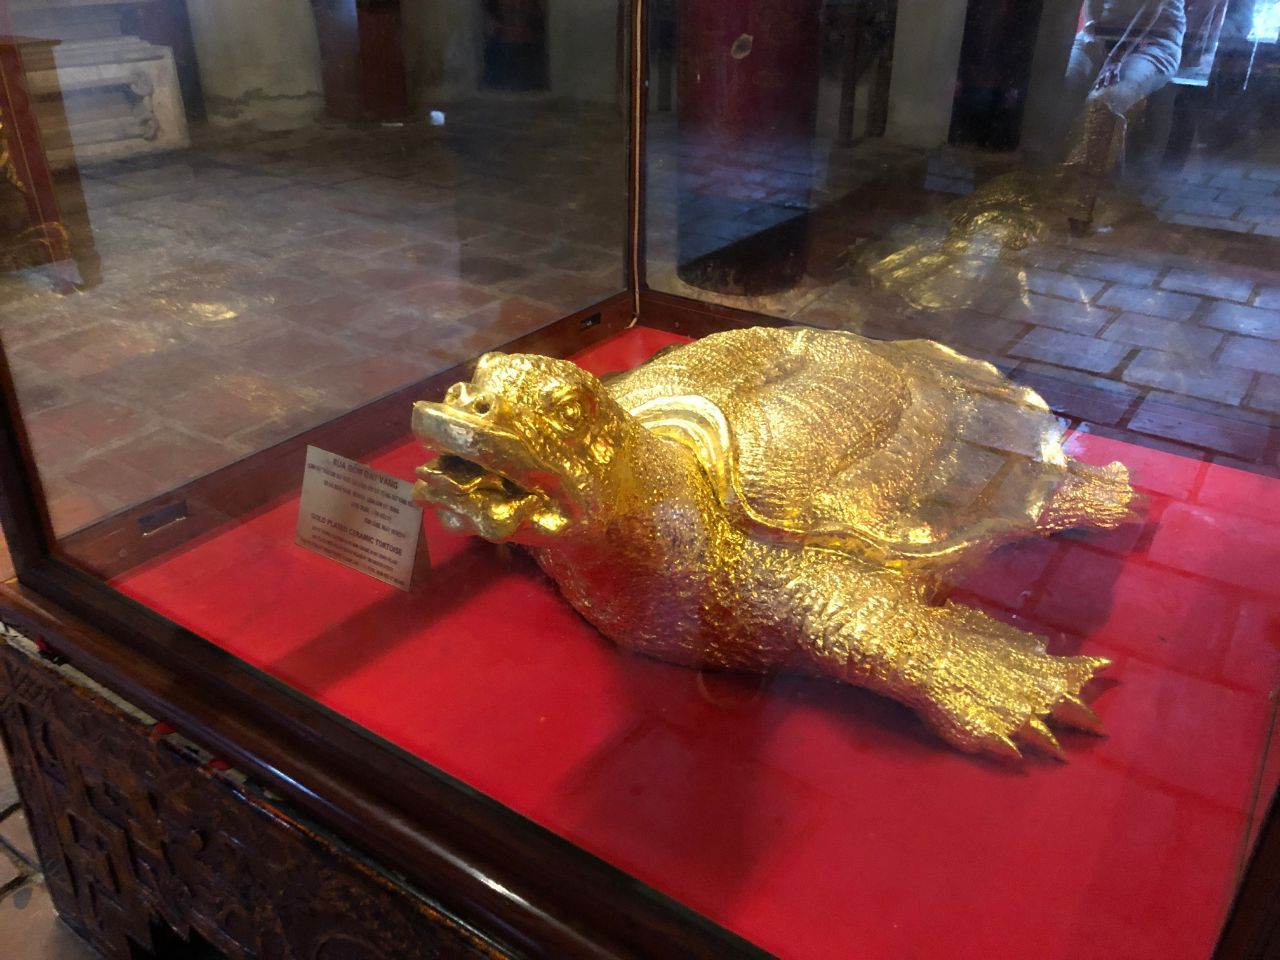 та самая черепаха из легенды - золотая - Фотоотчет Вьетнам 2019. Часть 1 - день 1